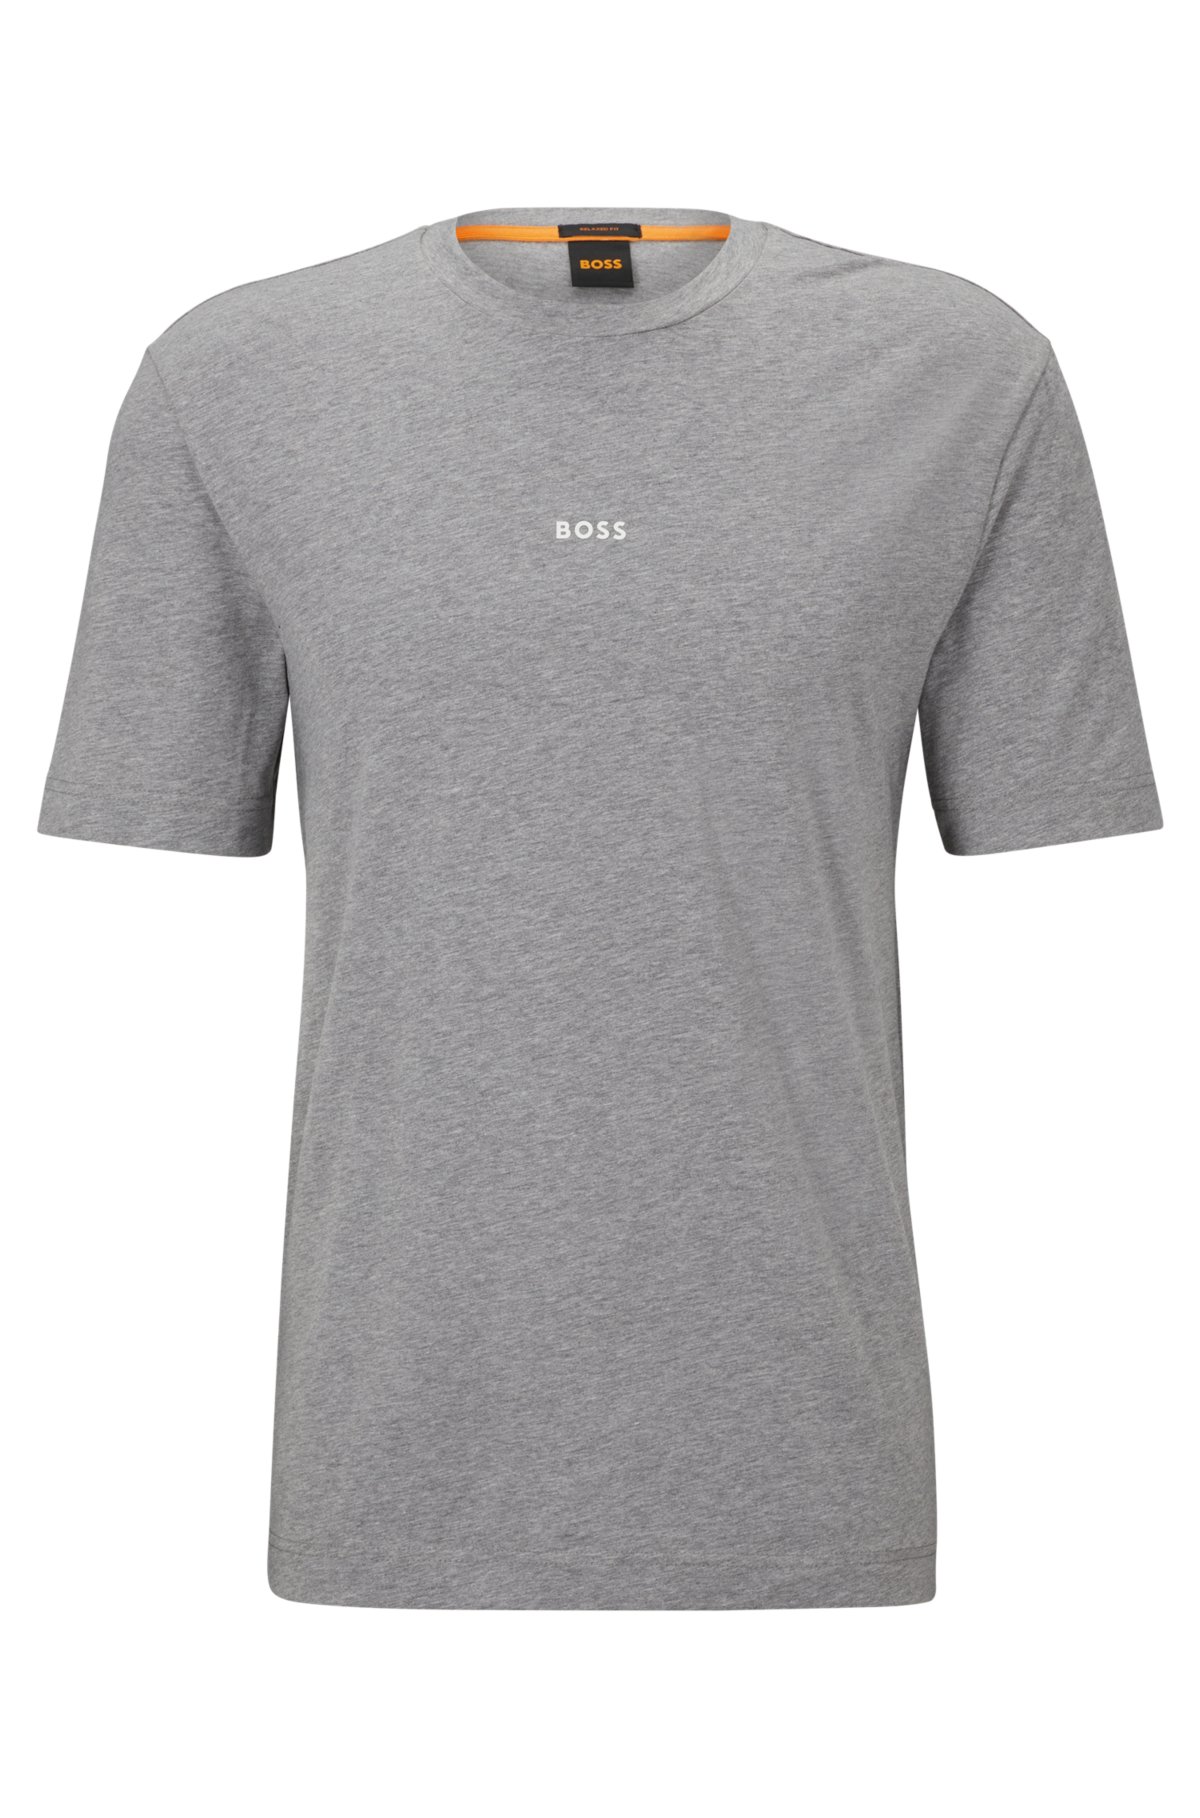 BOSS - リラックスフィット Tシャツ ストレッチコットン ロゴプリント